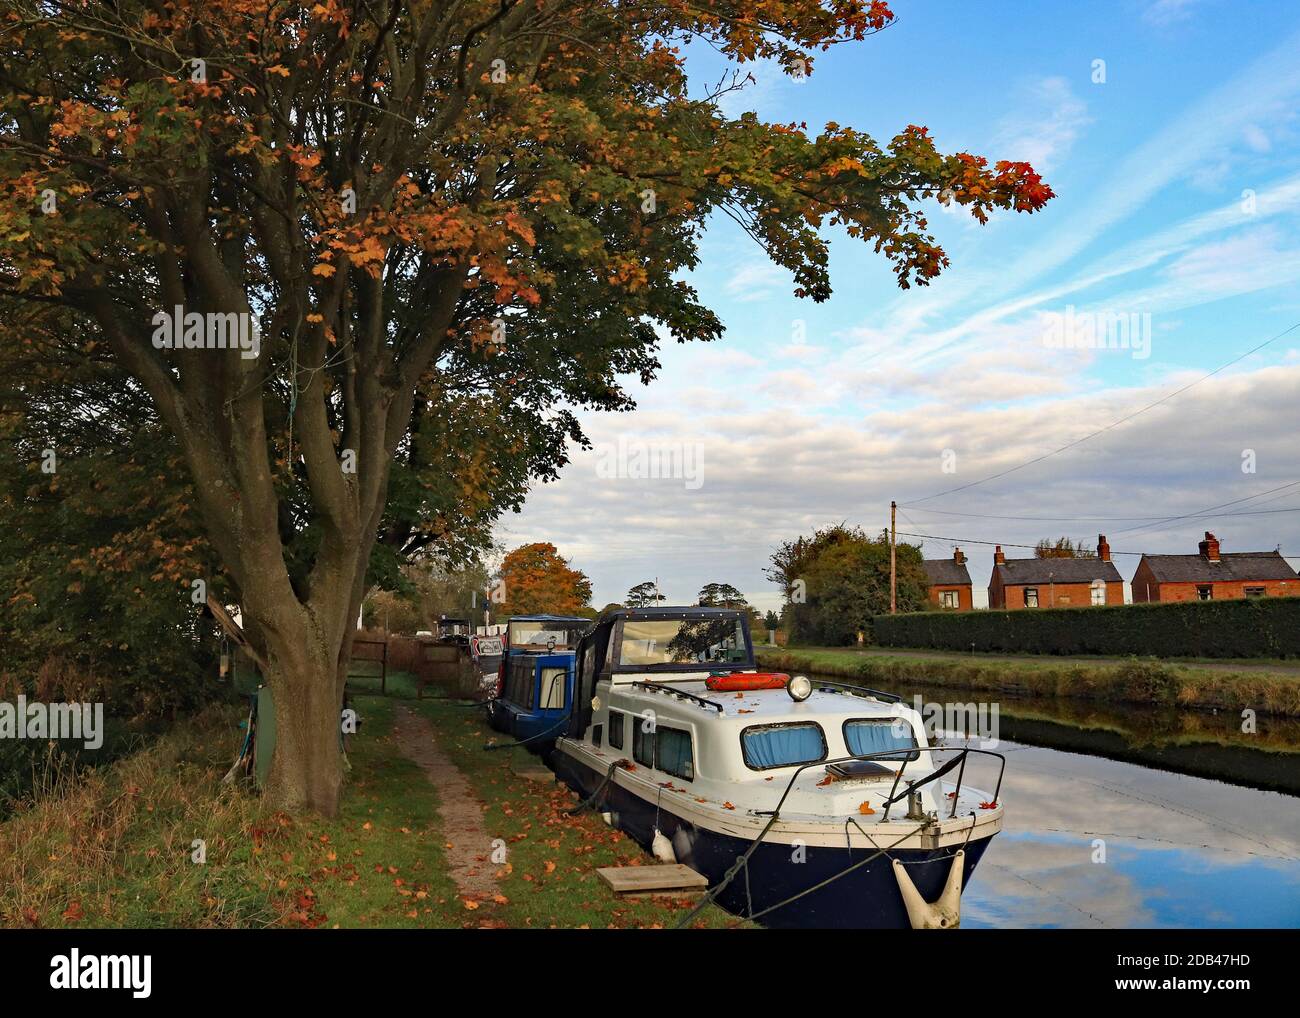 Le soleil saisit les couleurs de l'automne contre le ciel bleu au-dessus des bateaux sur le canal amarrés à Crabtree Lane sur le canal de Leeds et Liverpool, Burscough. Banque D'Images